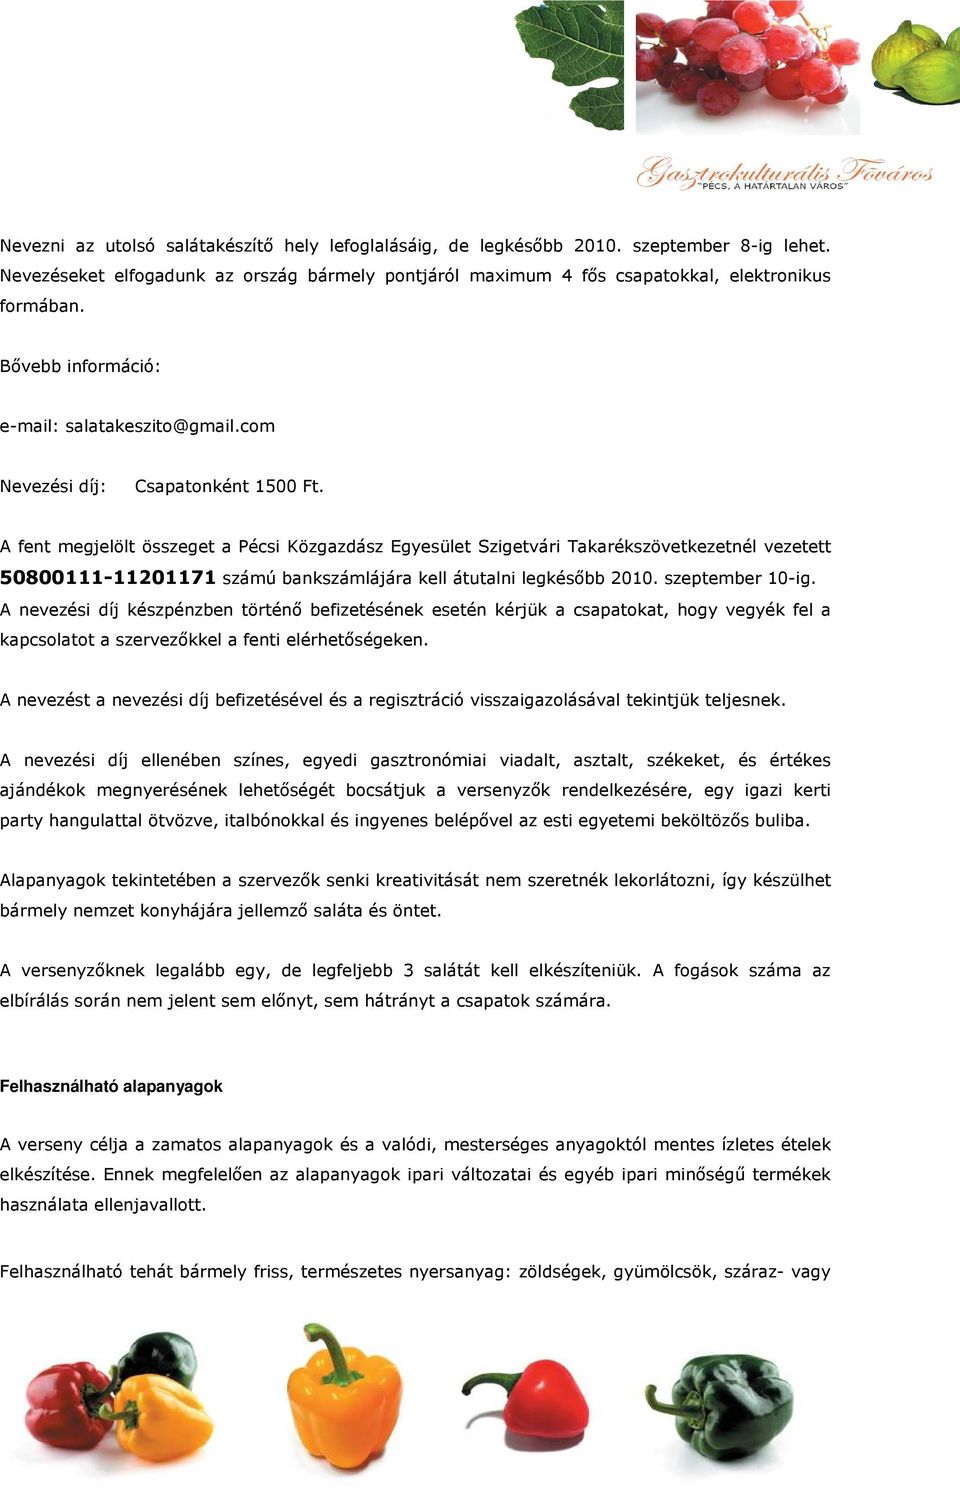 A fent megjelölt összeget a Pécsi Közgazdász Egyesület Szigetvári Takarékszövetkezetnél vezetett 50800111-11201171 számú bankszámlájára kell átutalni legkésıbb 2010. szeptember 10-ig.